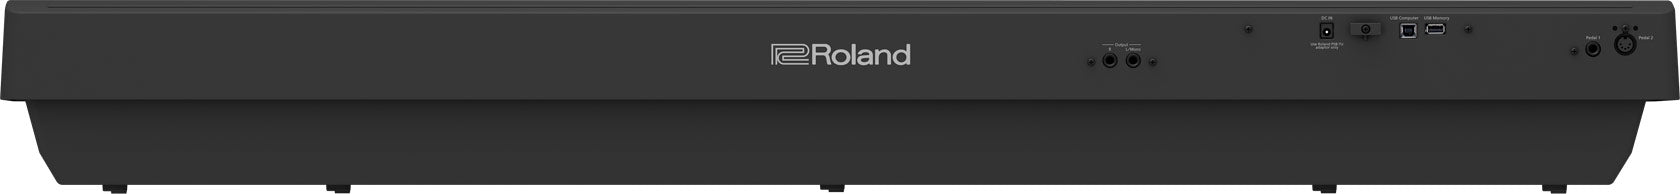 Roland FP-30X-BK Portable Digital Piano - Black - Fair Deal Music